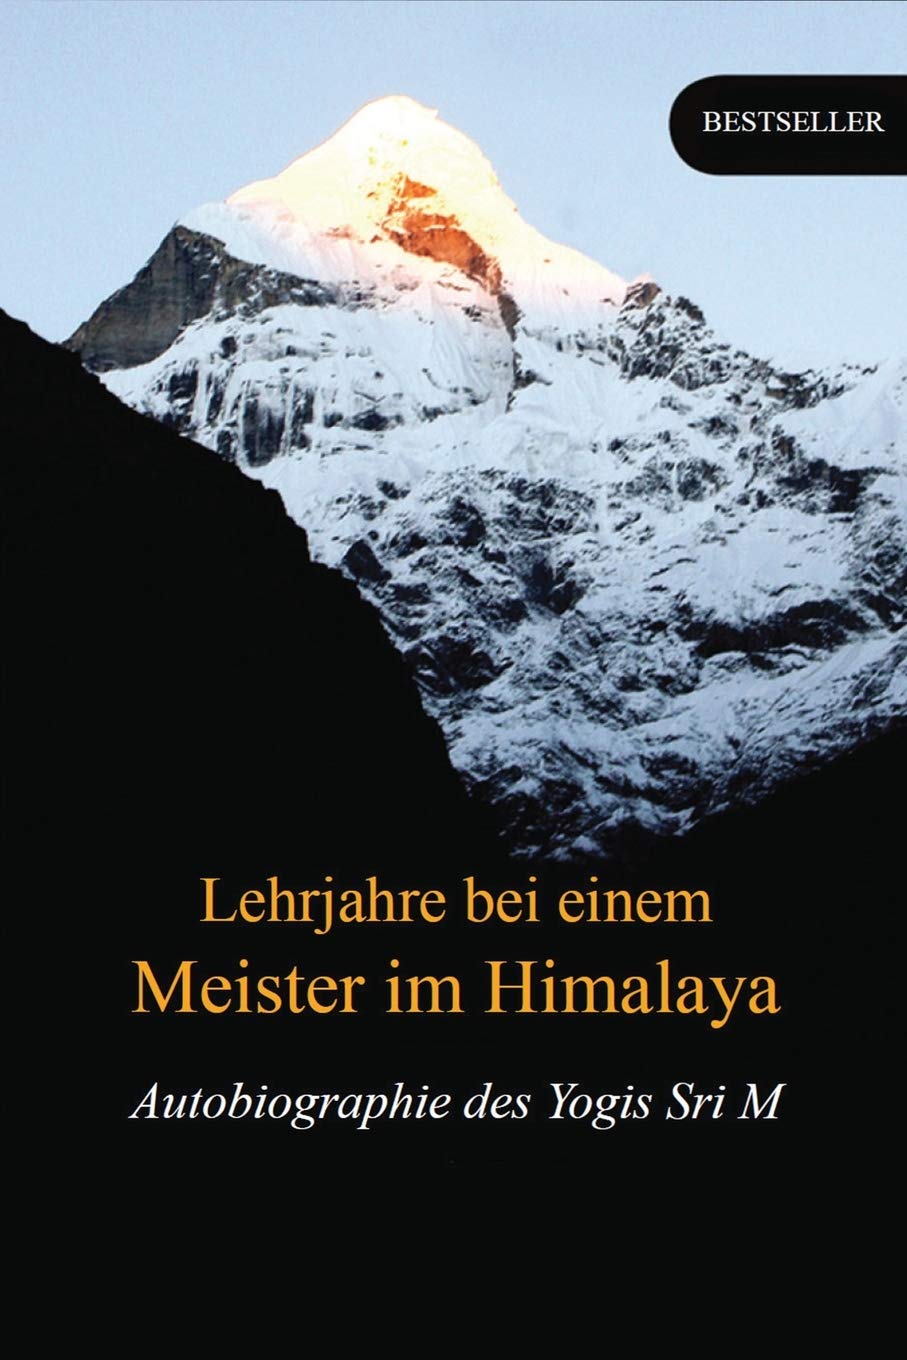 Sri M.: Lehrjahre bei einem Meister im Himalaya (Deutsch language, 2020, Magenta Press and Publication Pvt. Ltd.)